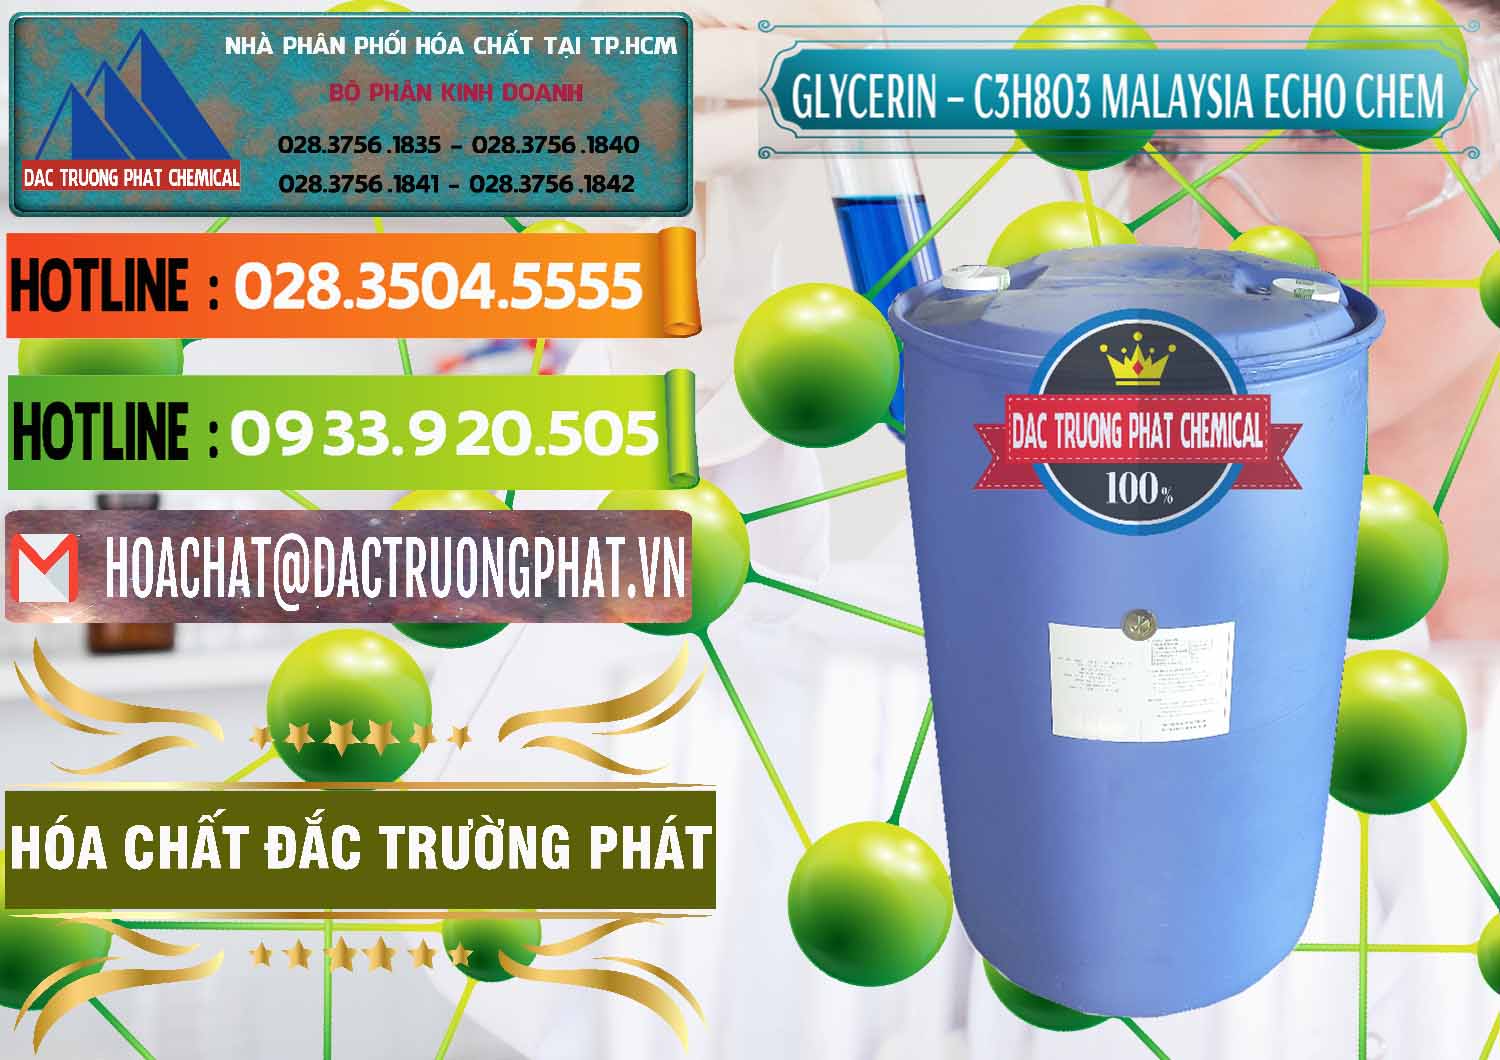 Công ty chuyên bán & cung ứng Glycerin – C3H8O3 99.7% Echo Chem Malaysia - 0273 - Đơn vị chuyên nhập khẩu _ cung cấp hóa chất tại TP.HCM - cungcaphoachat.com.vn